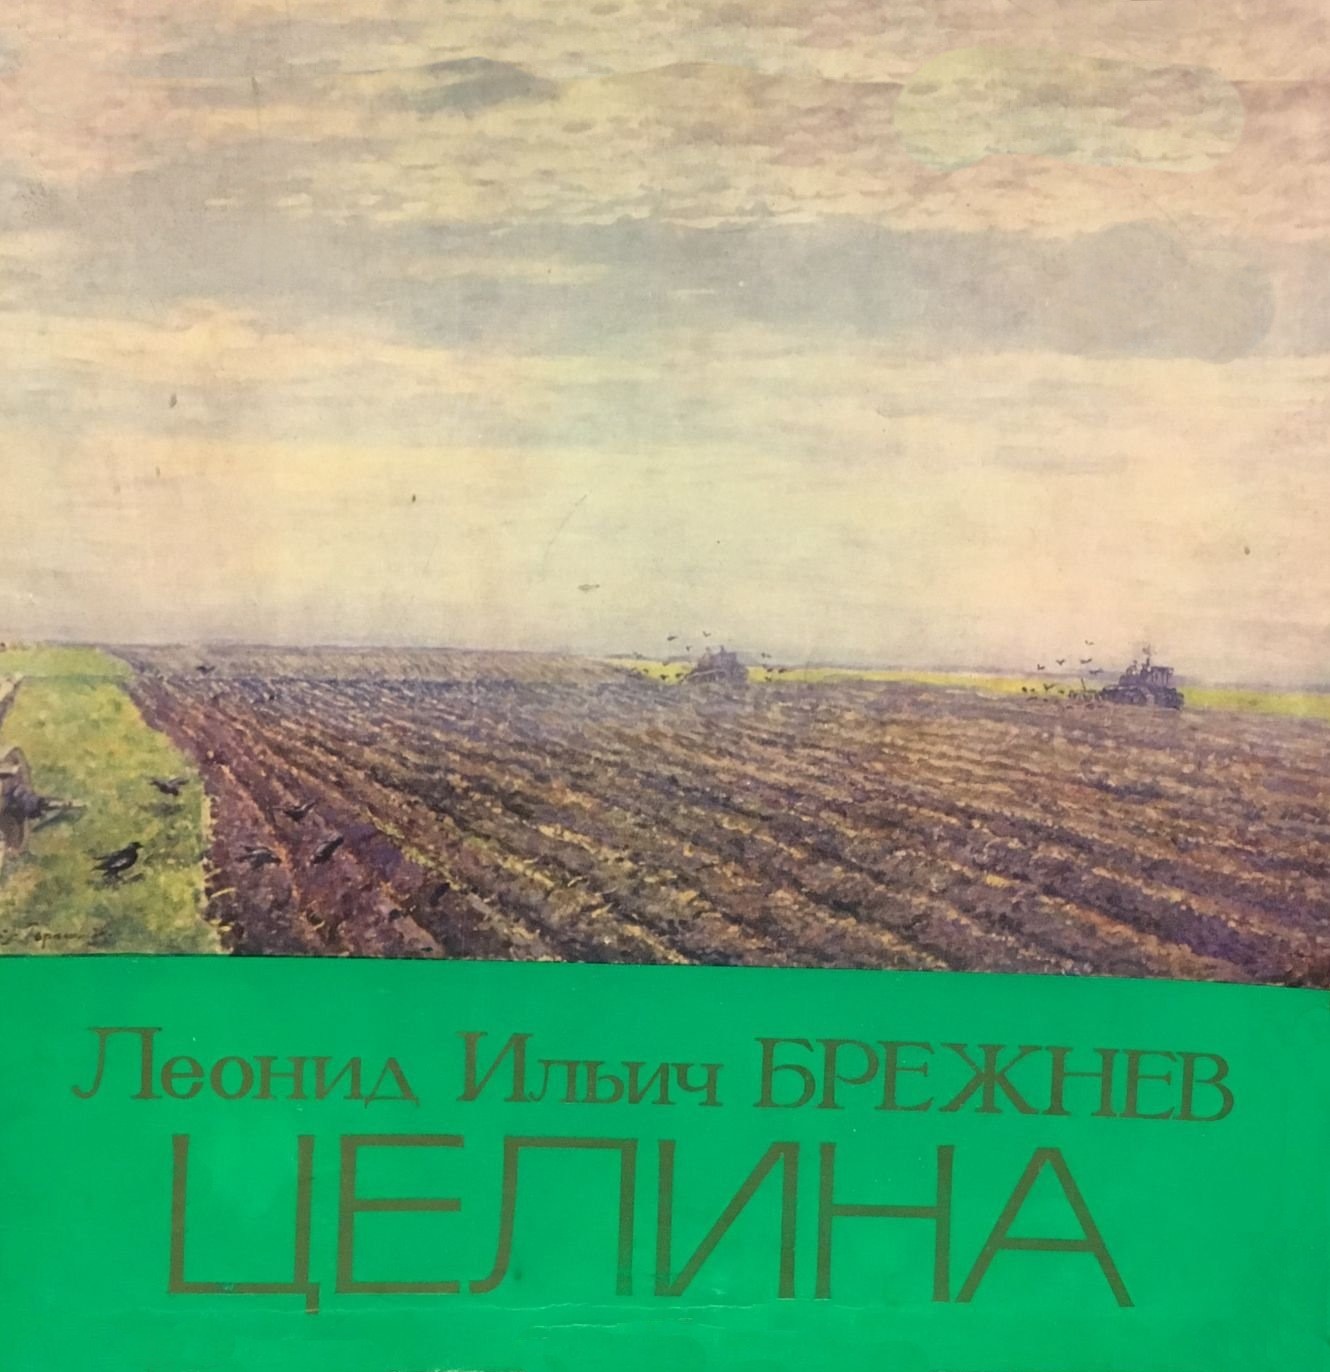 Л. И. БРЕЖНЕВ (1906): Целина. Читает Ю. Каюров